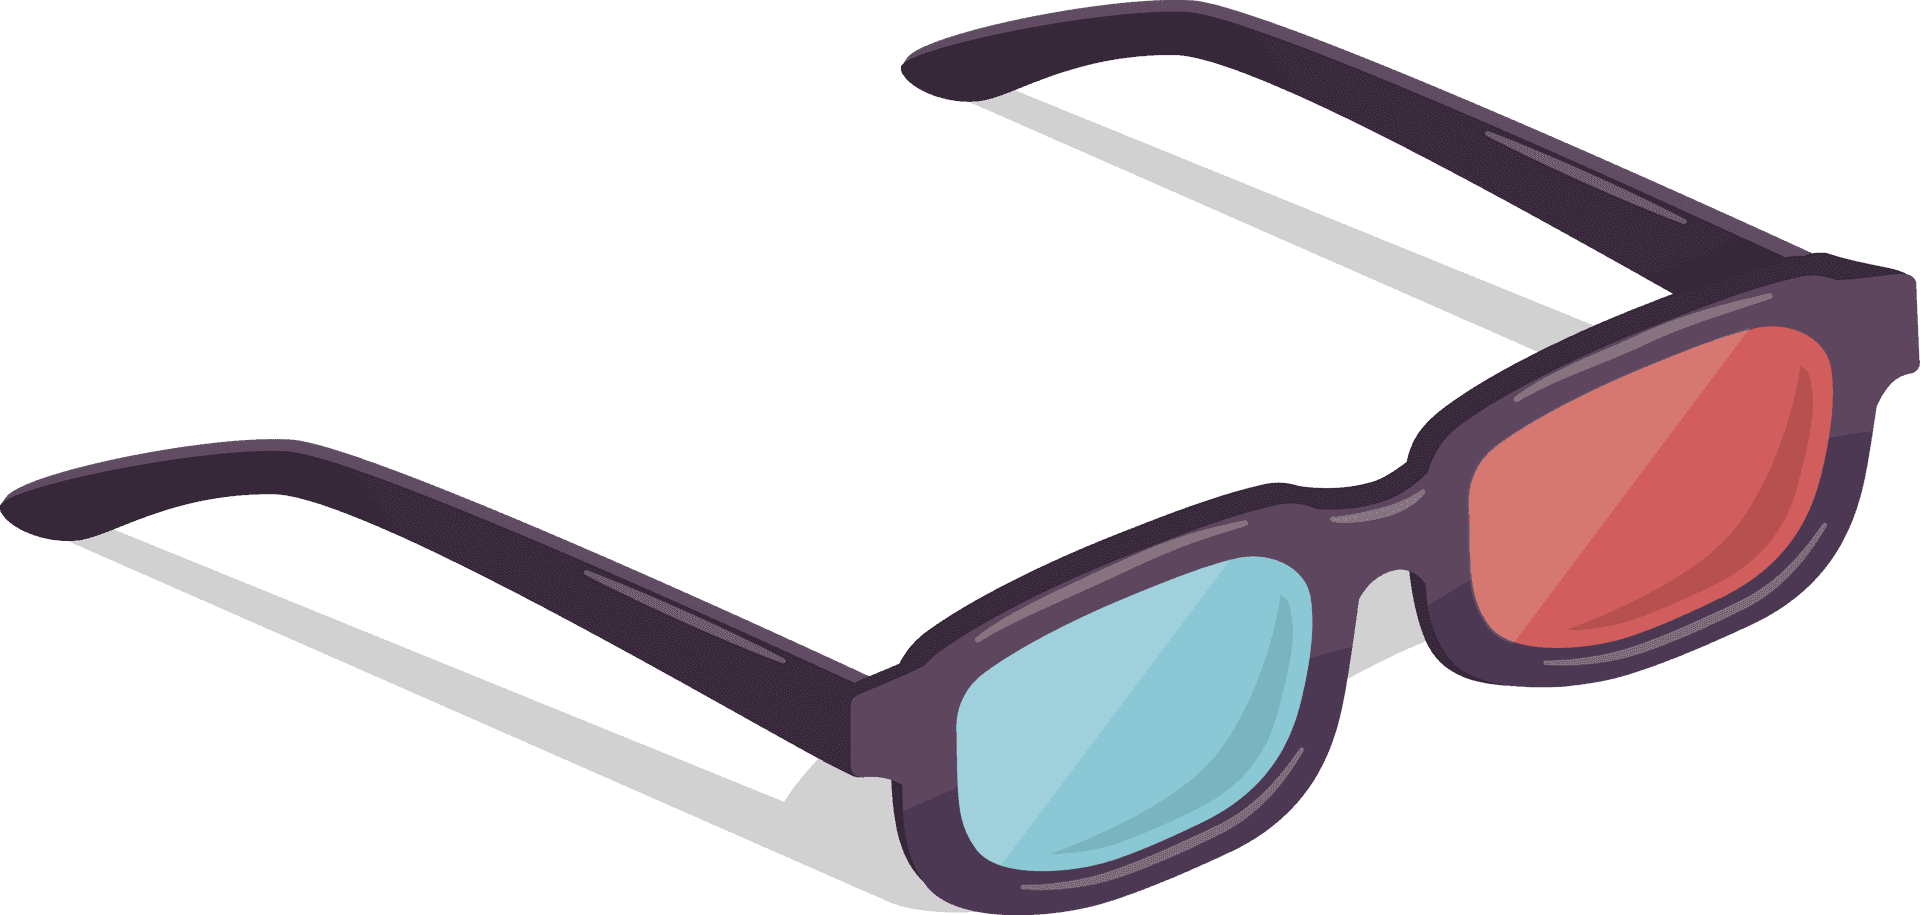 3 D Cinema Glasses Illustration PNG image